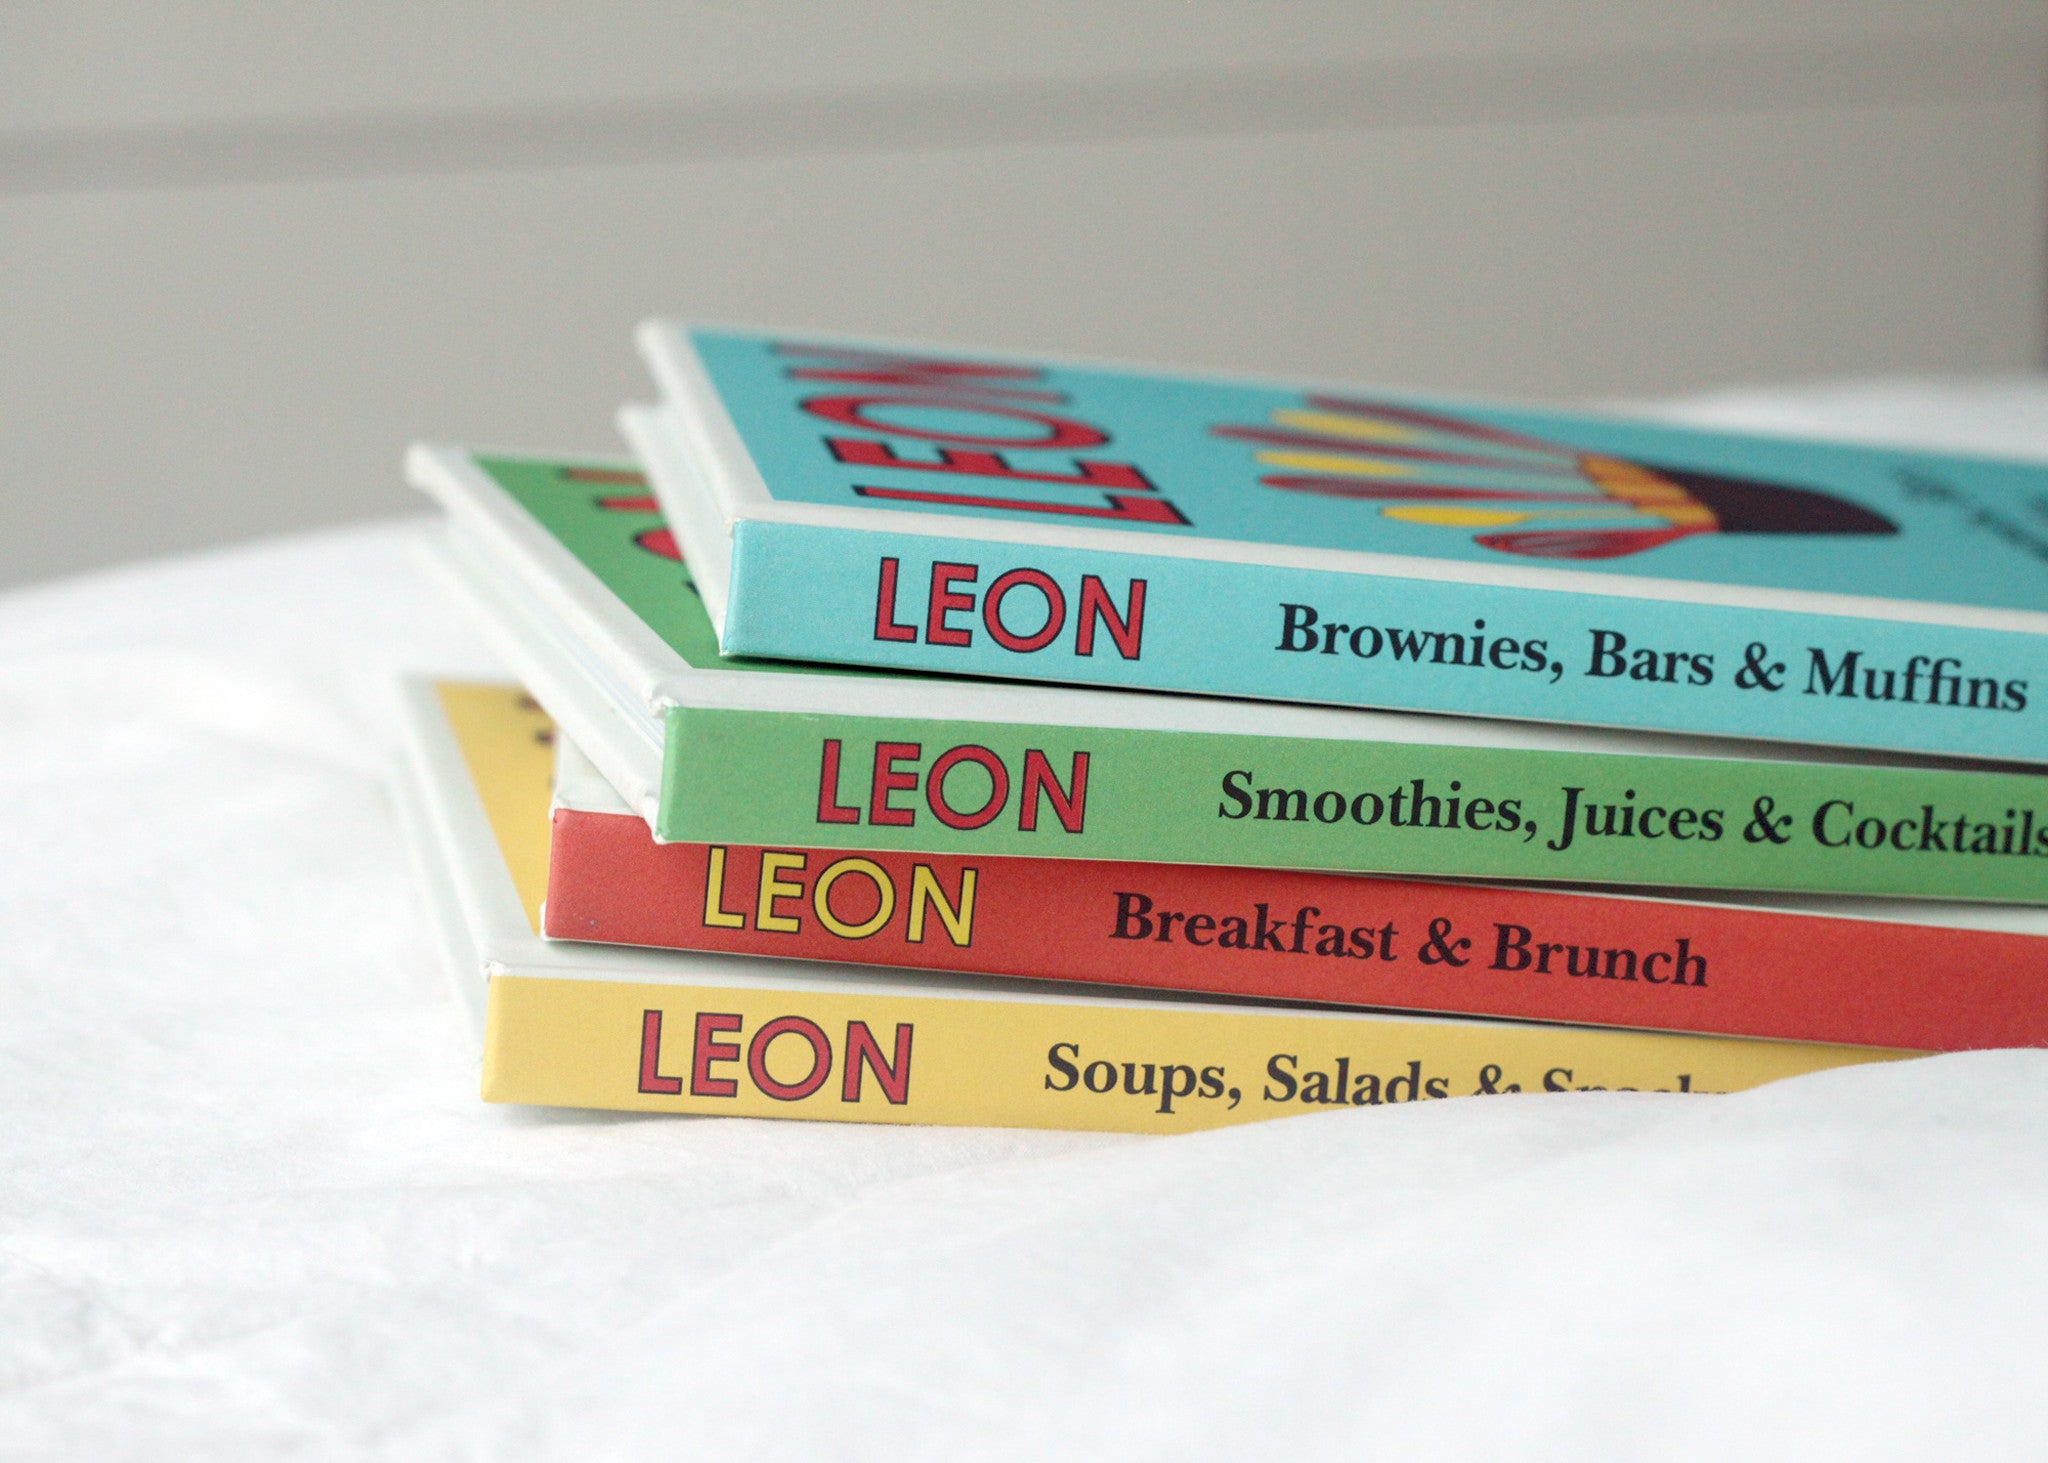 LEON: Soups, Salads, & Snacks